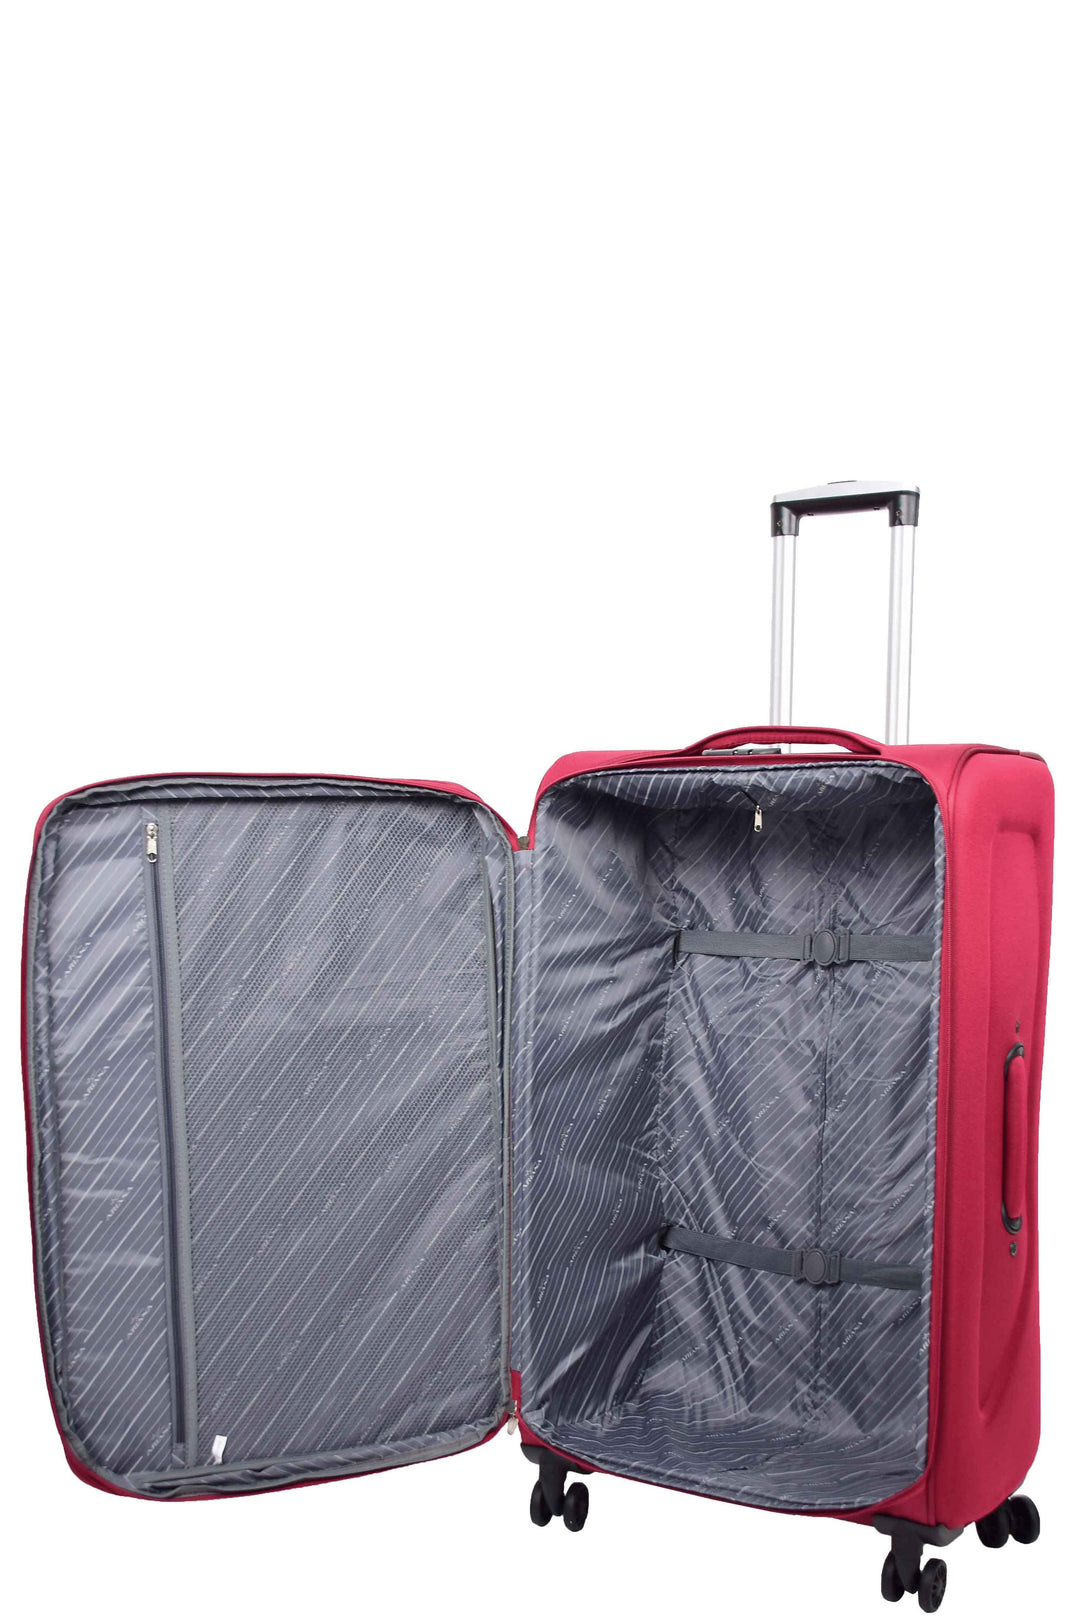 Guardian Lightweight Suitcase 31